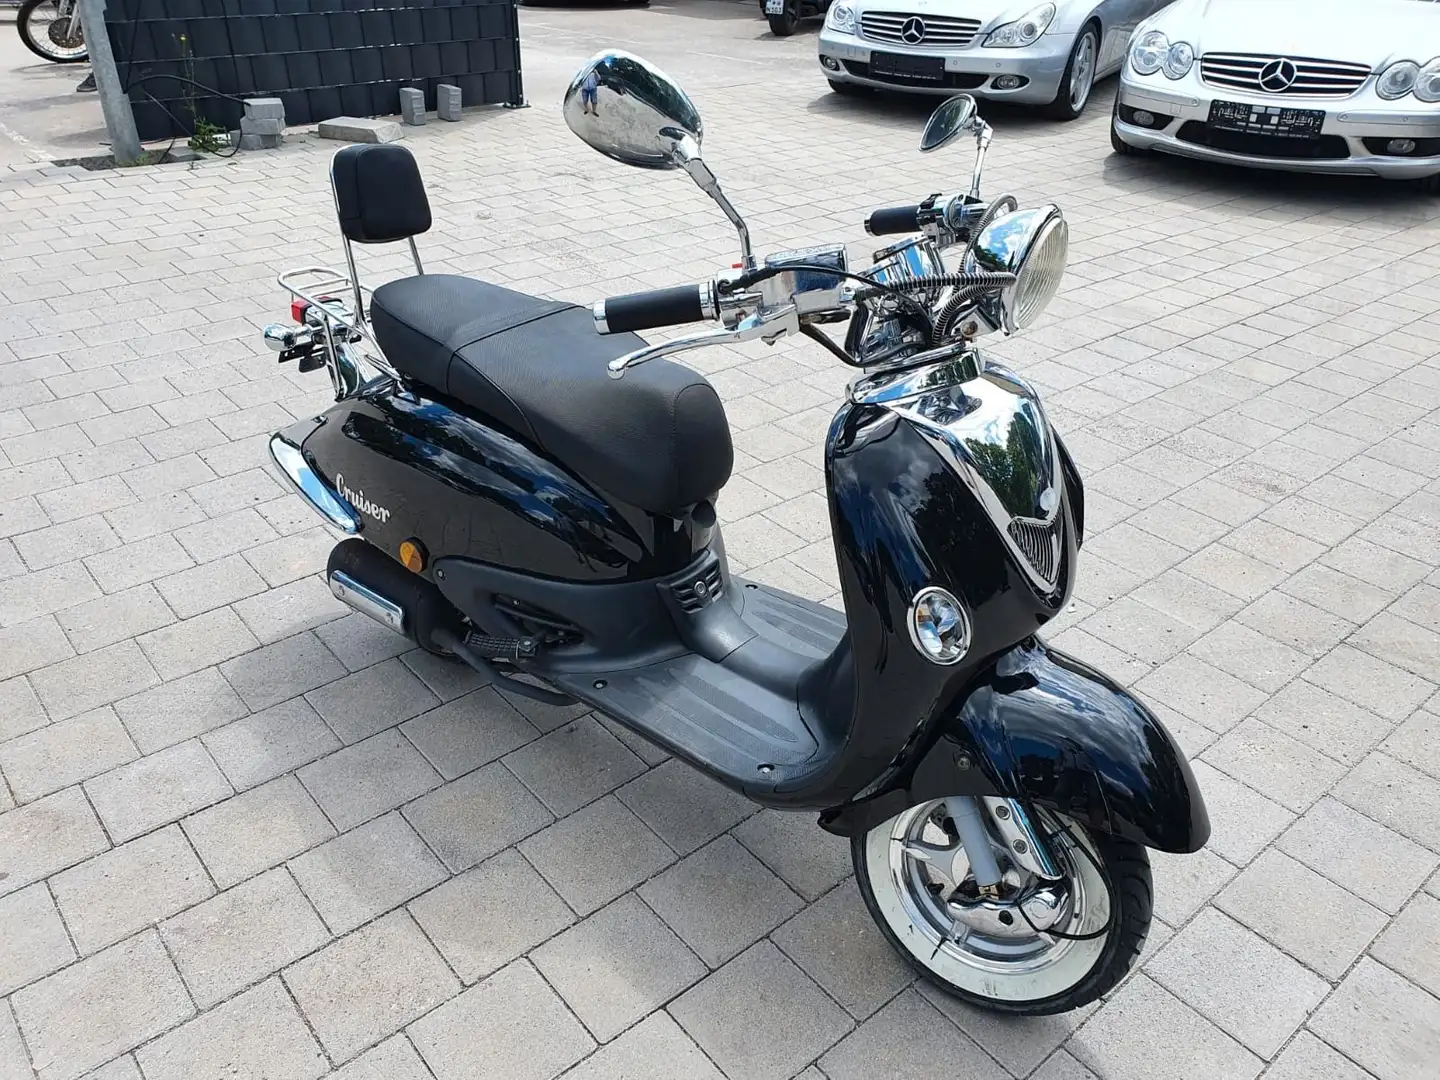 Luxxon Cruiser Roller/Scooter in Schwarz gebraucht in Lachen-speyerdorf für  € 950,-